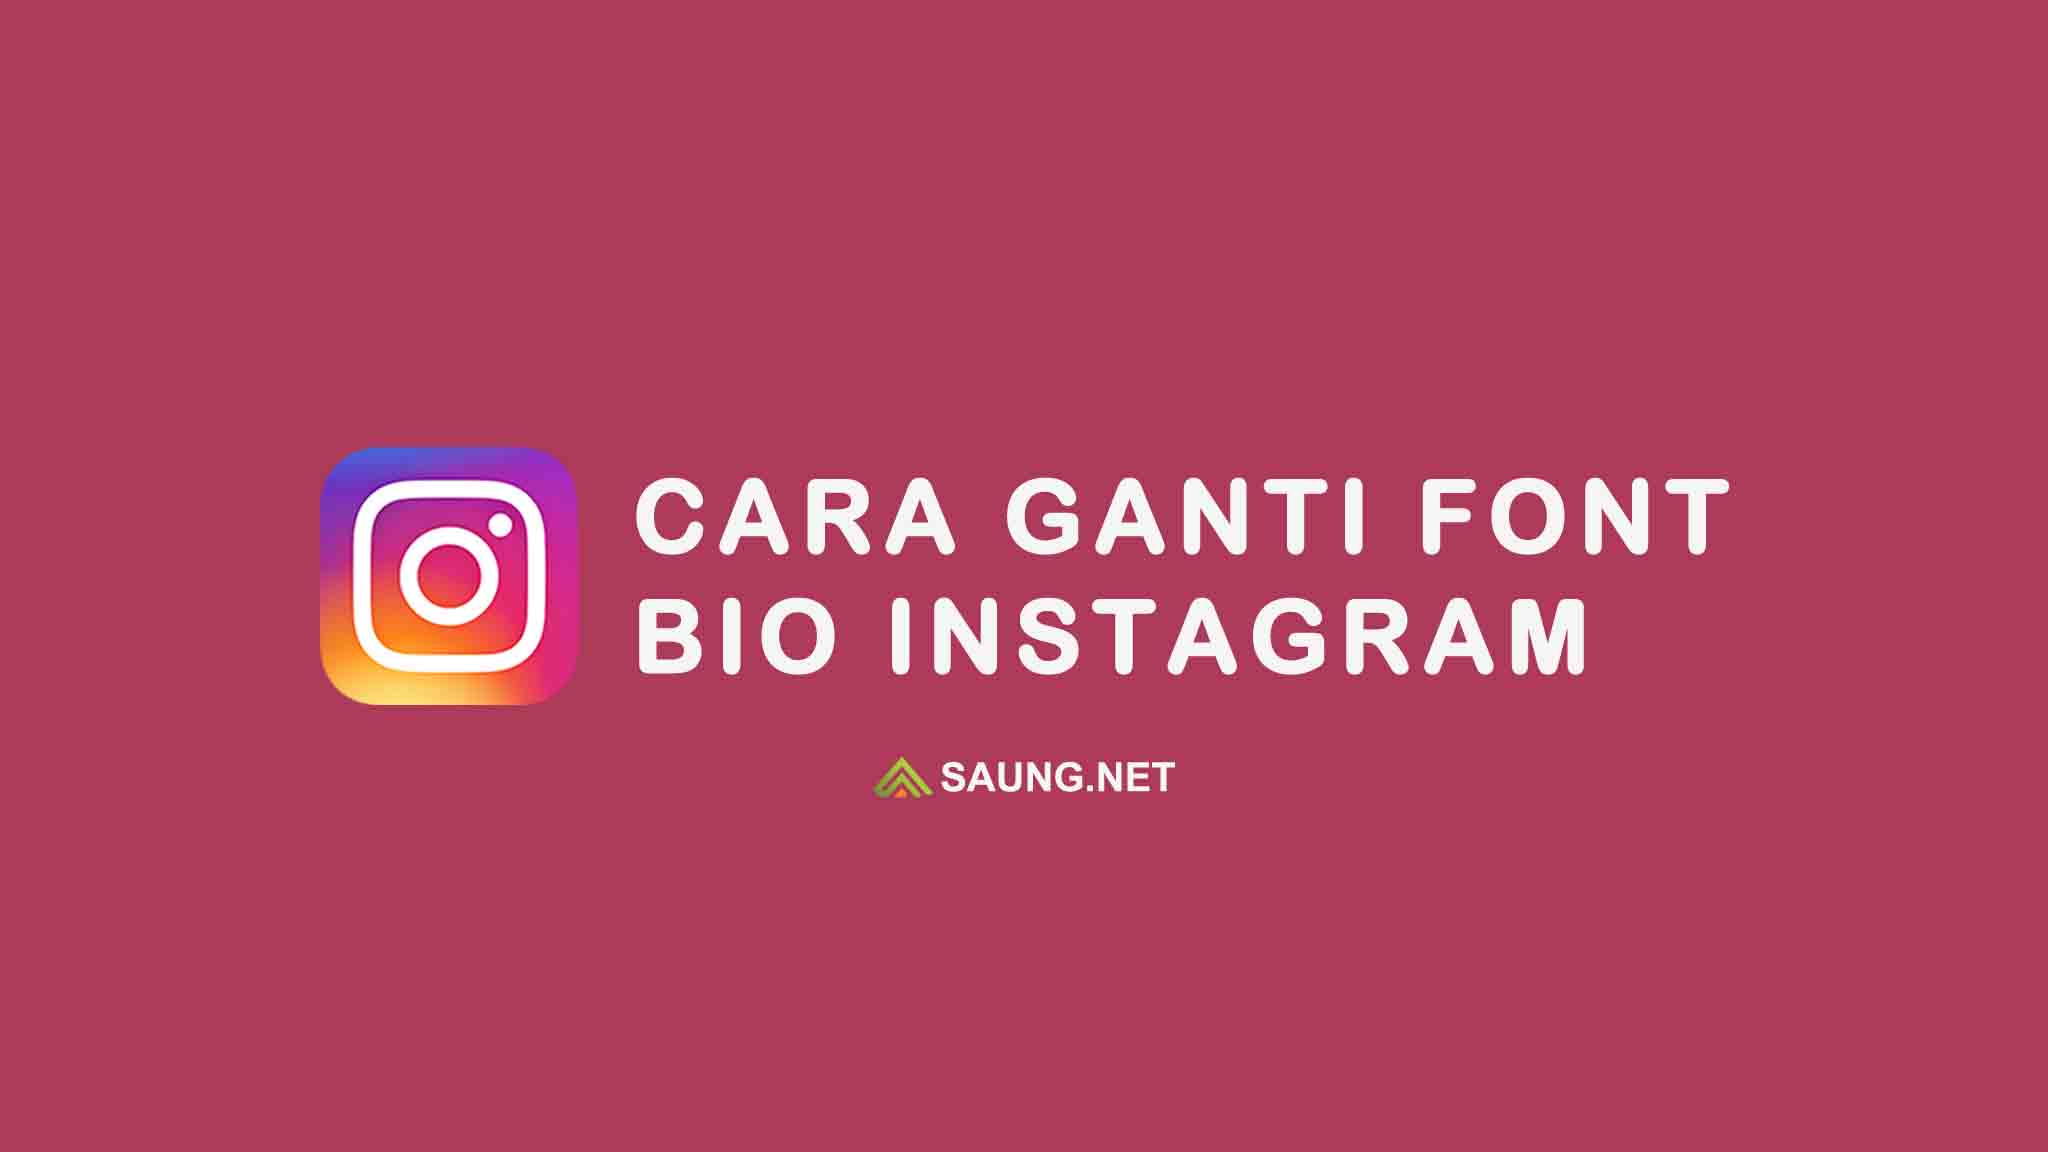 Cara Ganti Font Bio Instagram Supaya Lebih Menarik Dan Unik